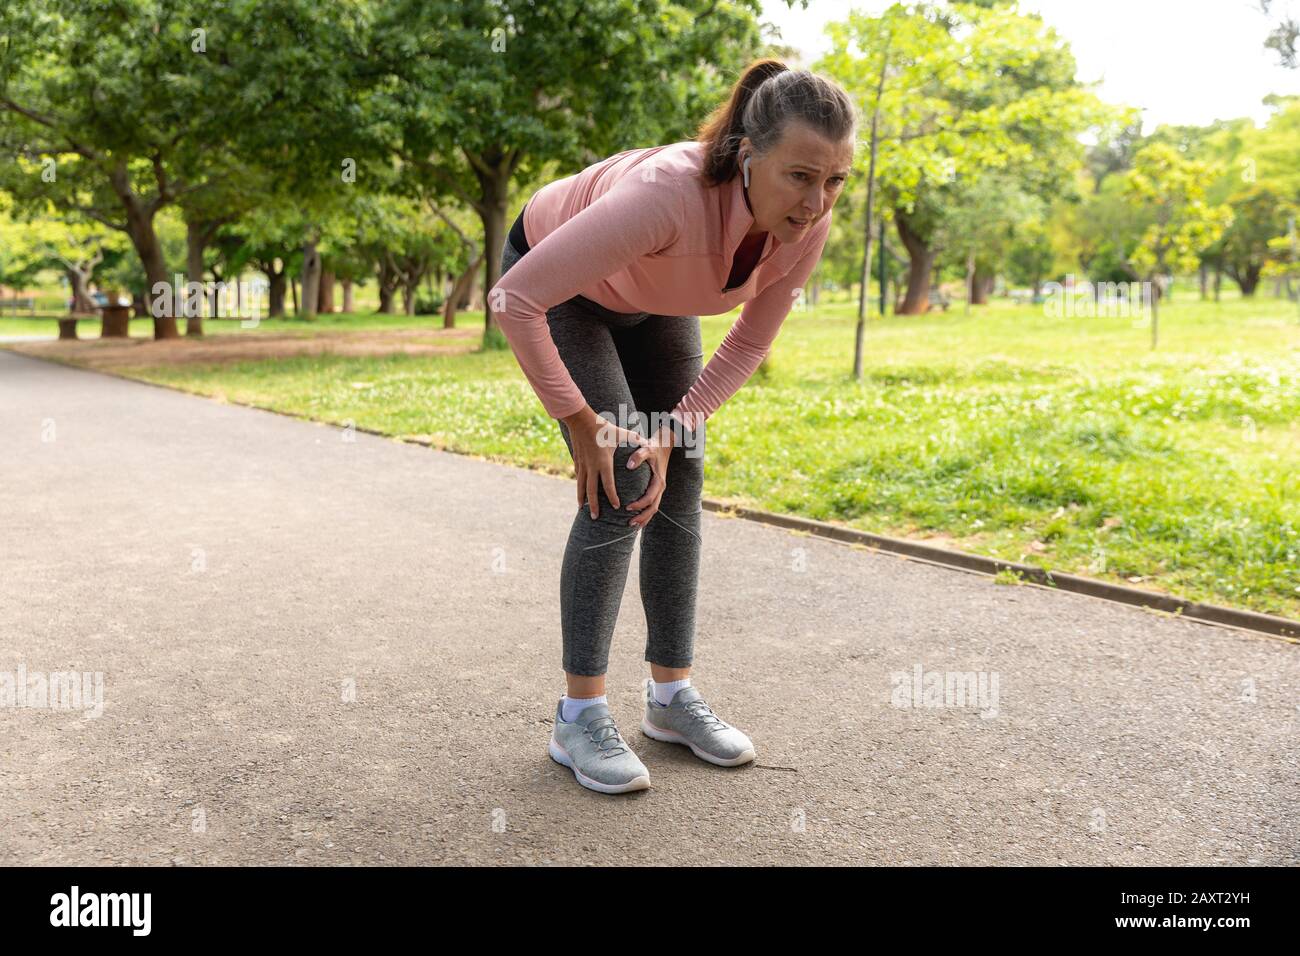 Seitenansicht einer Frau im mittleren Alter, die in einem Park ausarbeitet, ihr verletztes Knie hält und sich bei Schmerzen nach unten beugt Stockfoto